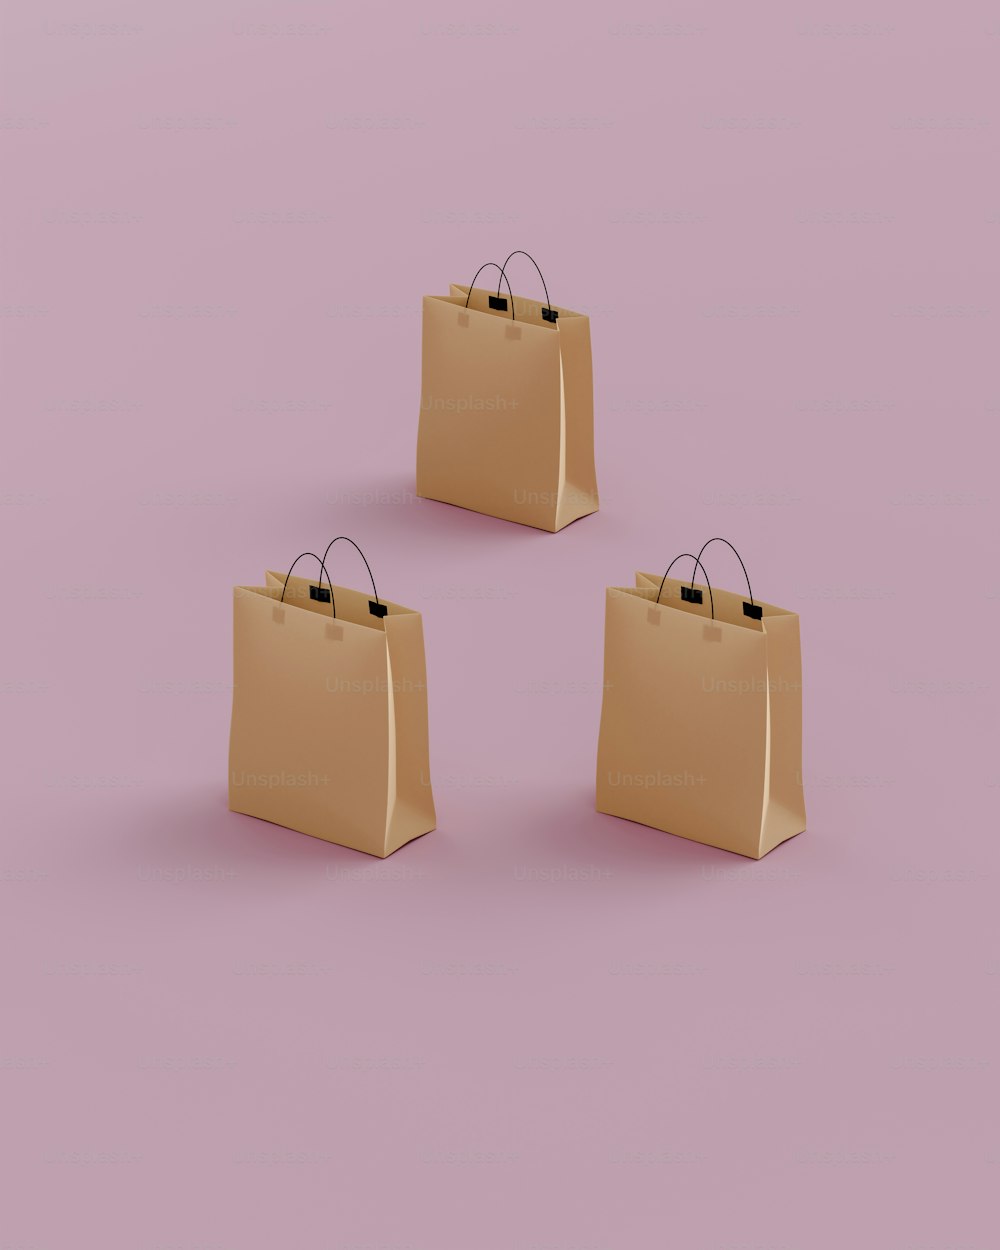 Tre borse della spesa marroni su uno sfondo rosa